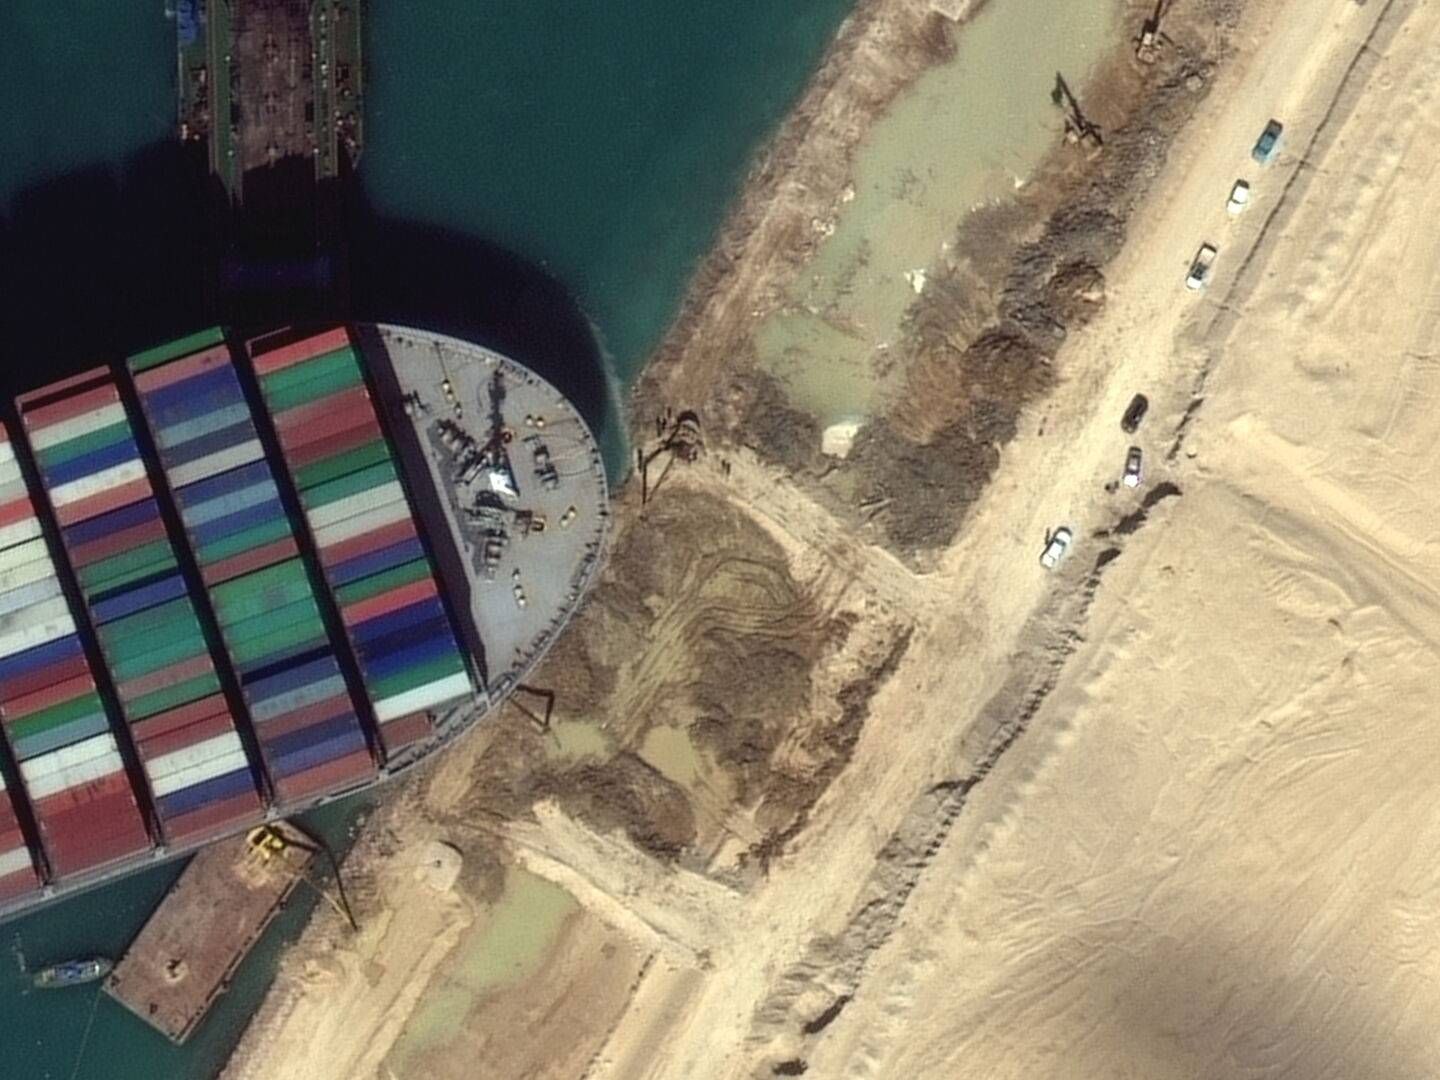 ”Kommunikation på arabisk mellem lodser gjorde det svært for kaptajnen og besætningen at forstå situationen i Suez-kanalen," konkluderer rapport. | Foto: Maxar Technologies/Reuters/Ritzau Scanpix